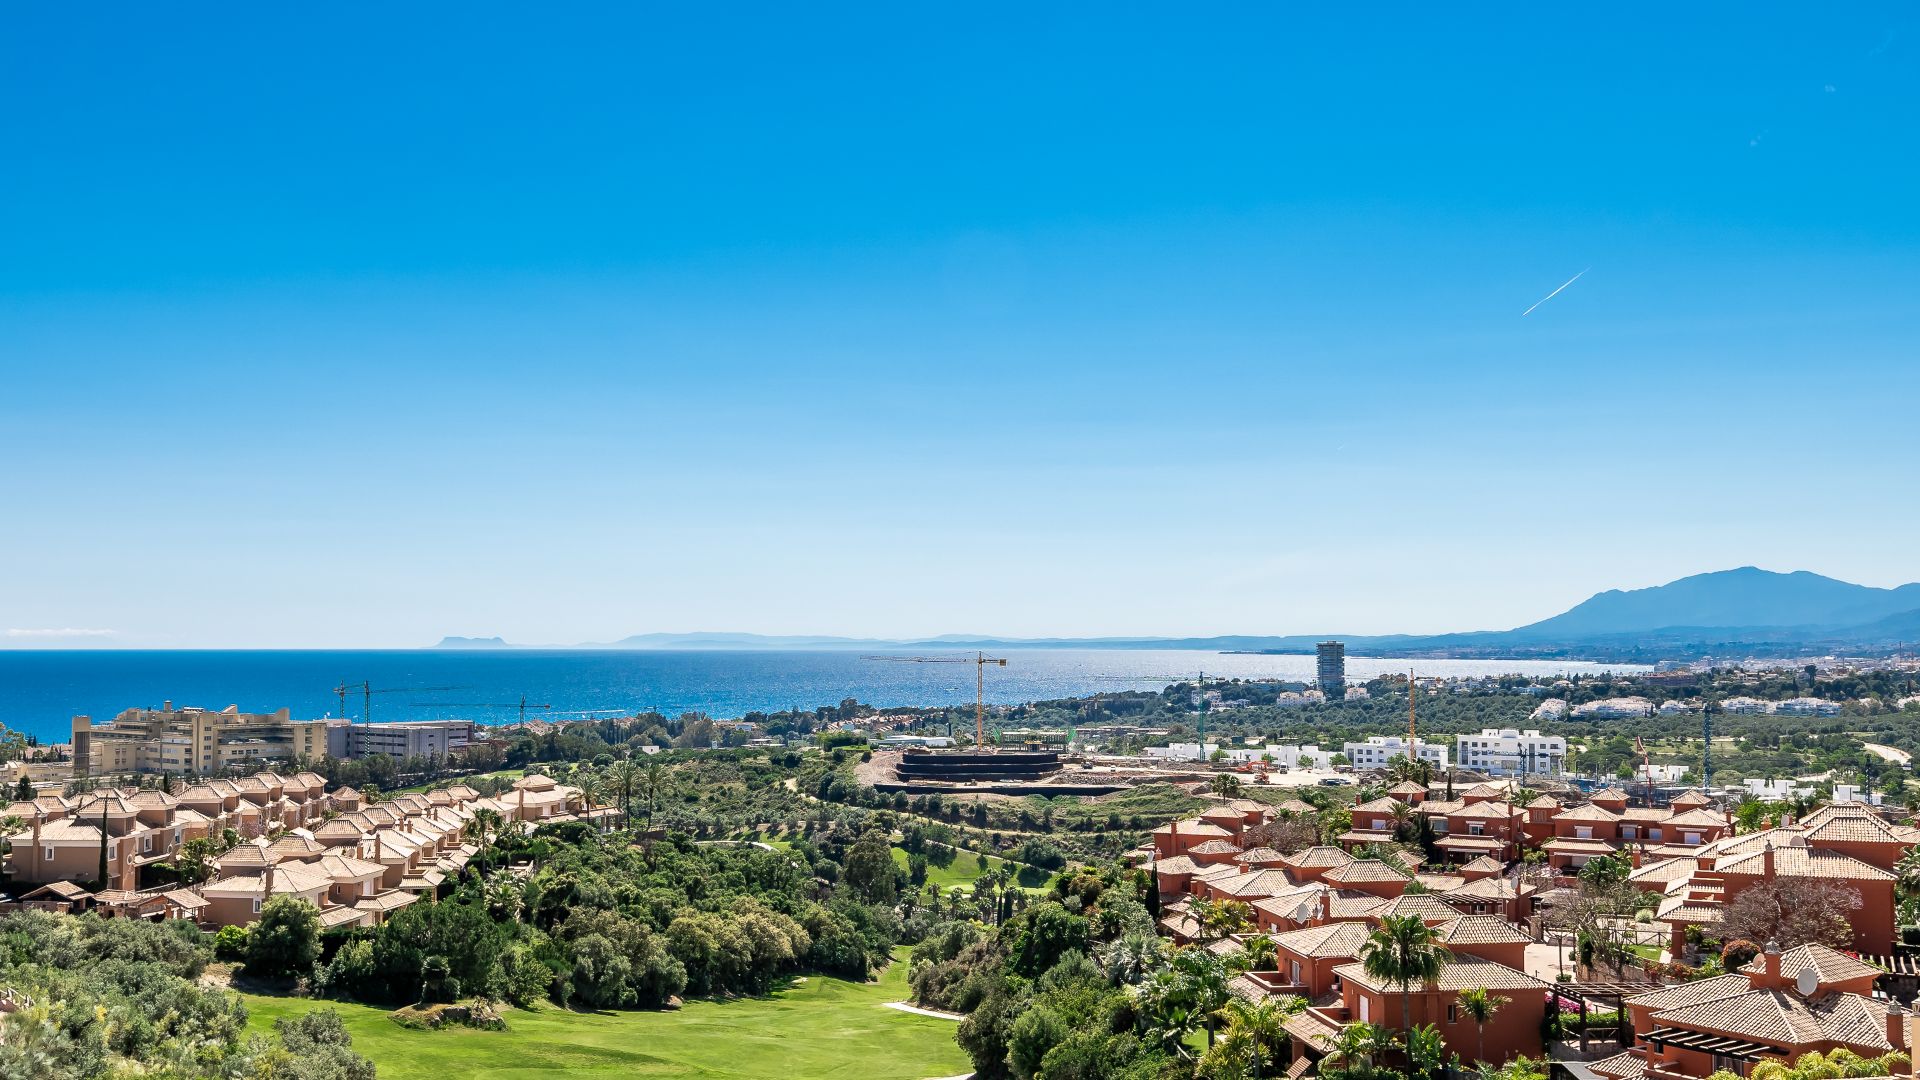 Reihenhaus mit den besten Aussichten in Santa Clara | Engel & Völkers Marbella